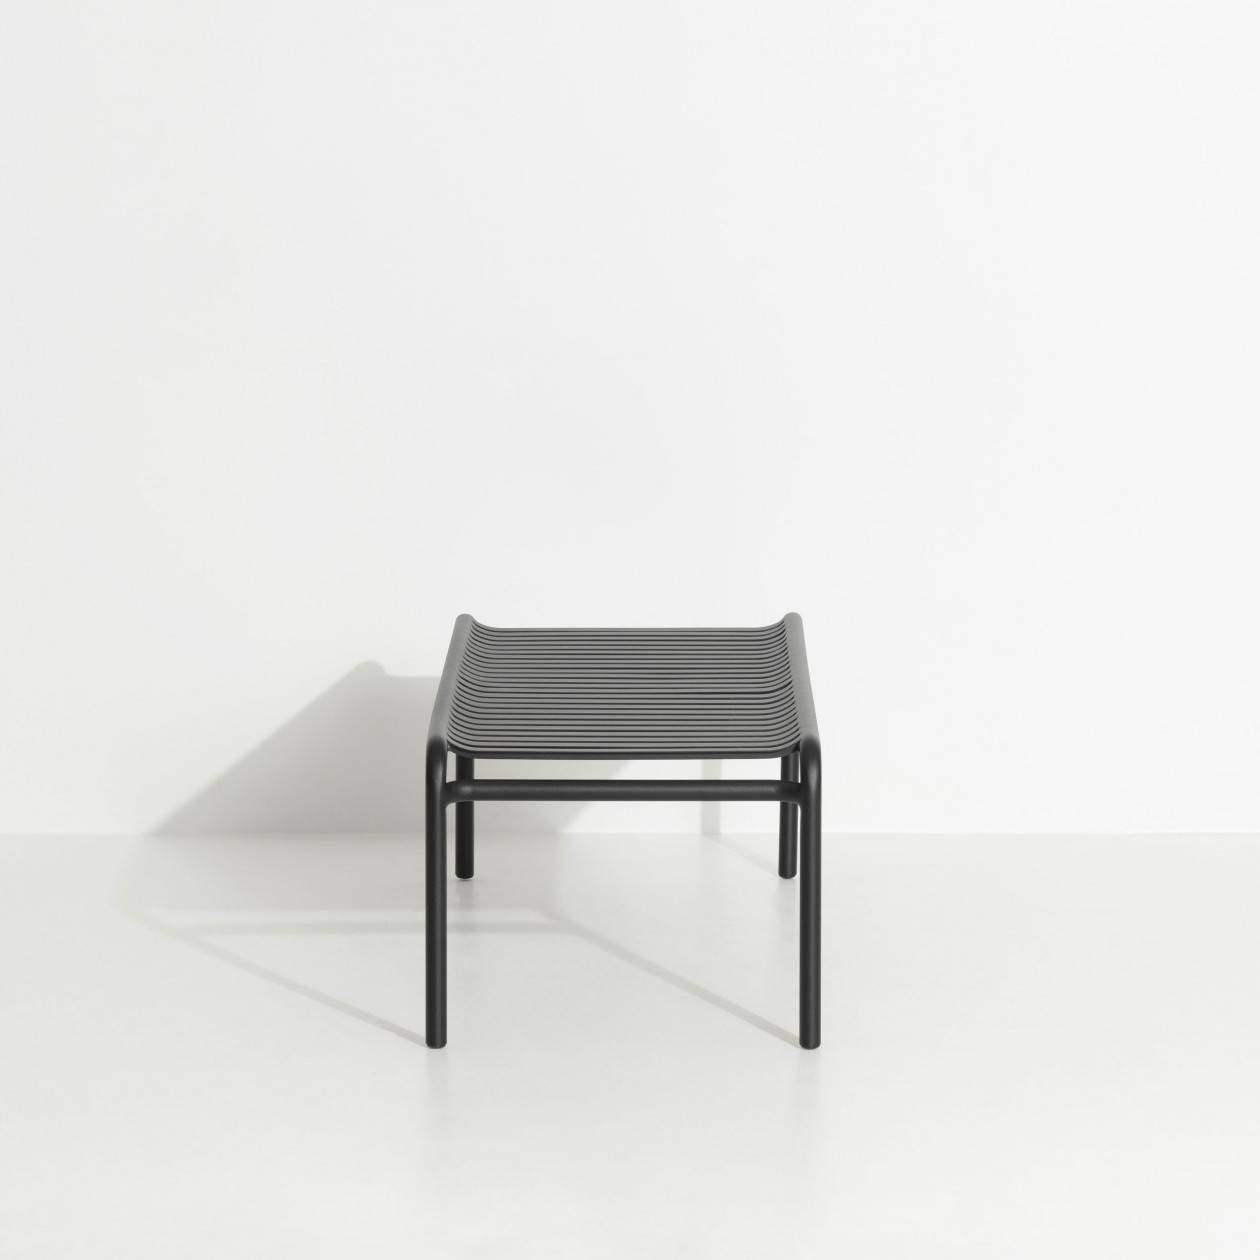 Week-End Coffee Table large in Black präsentiert im Onlineshop von KAQTU Design AG. Beistelltisch Outdoor ist von Petite Friture